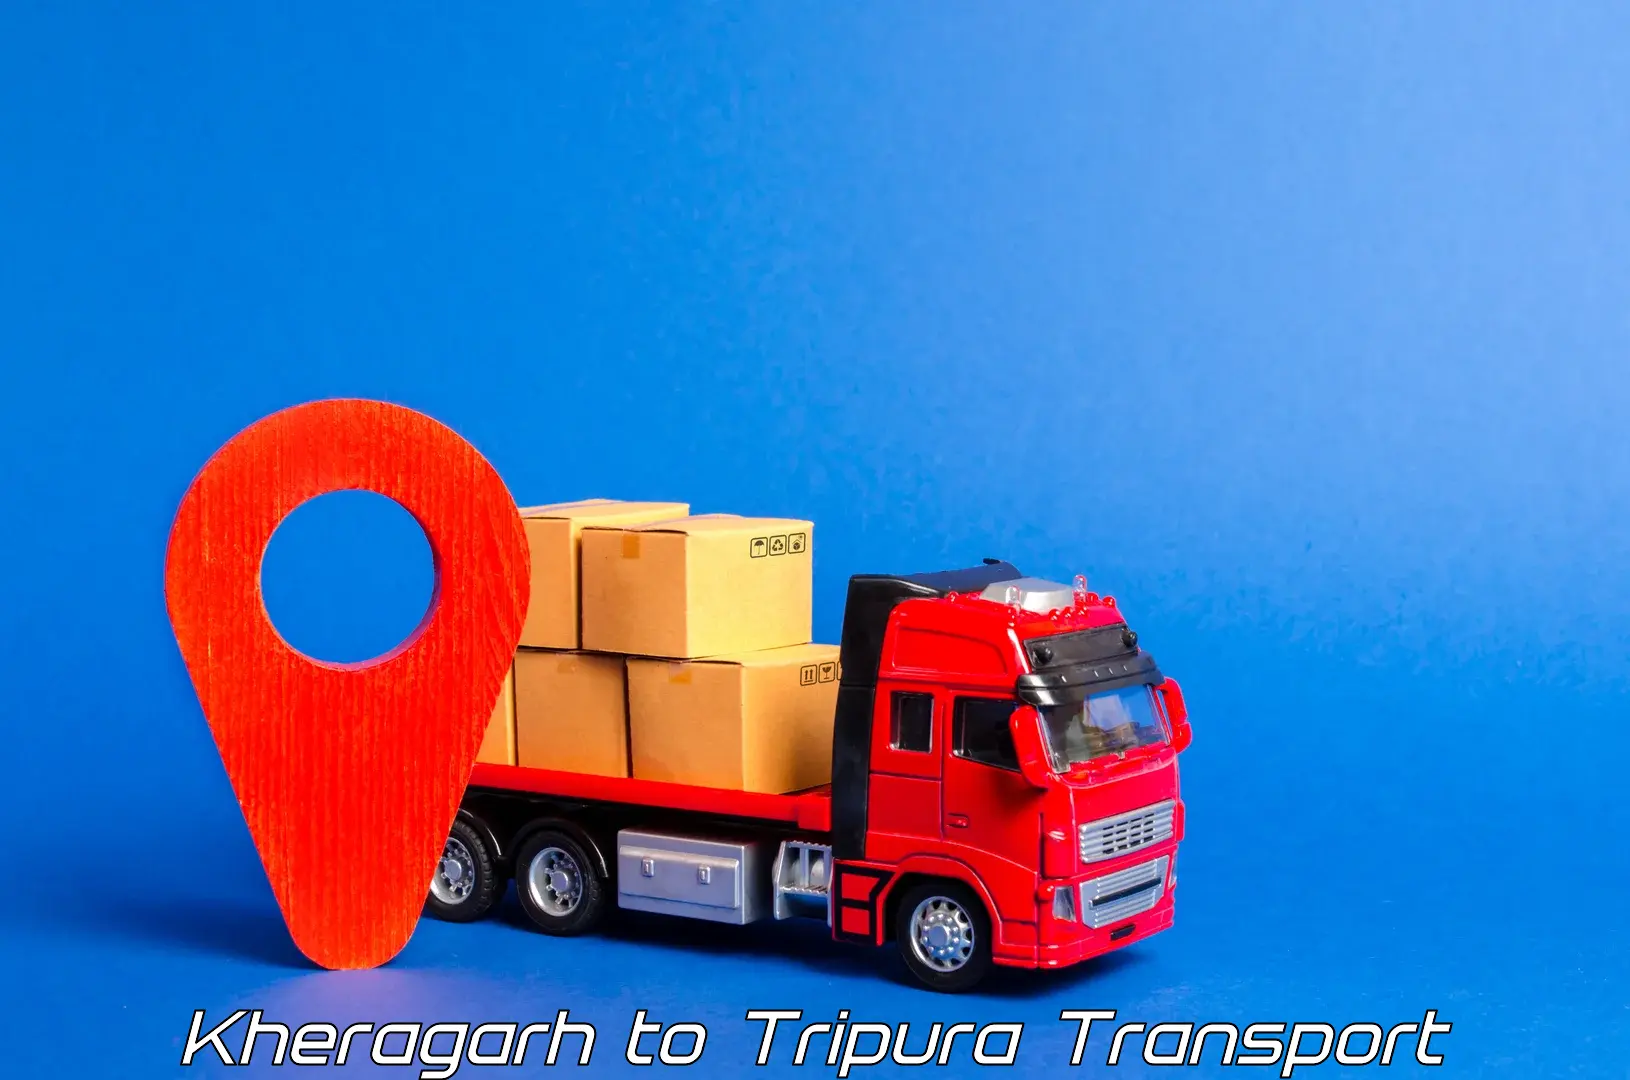 Vehicle transport services Kheragarh to Dhalai